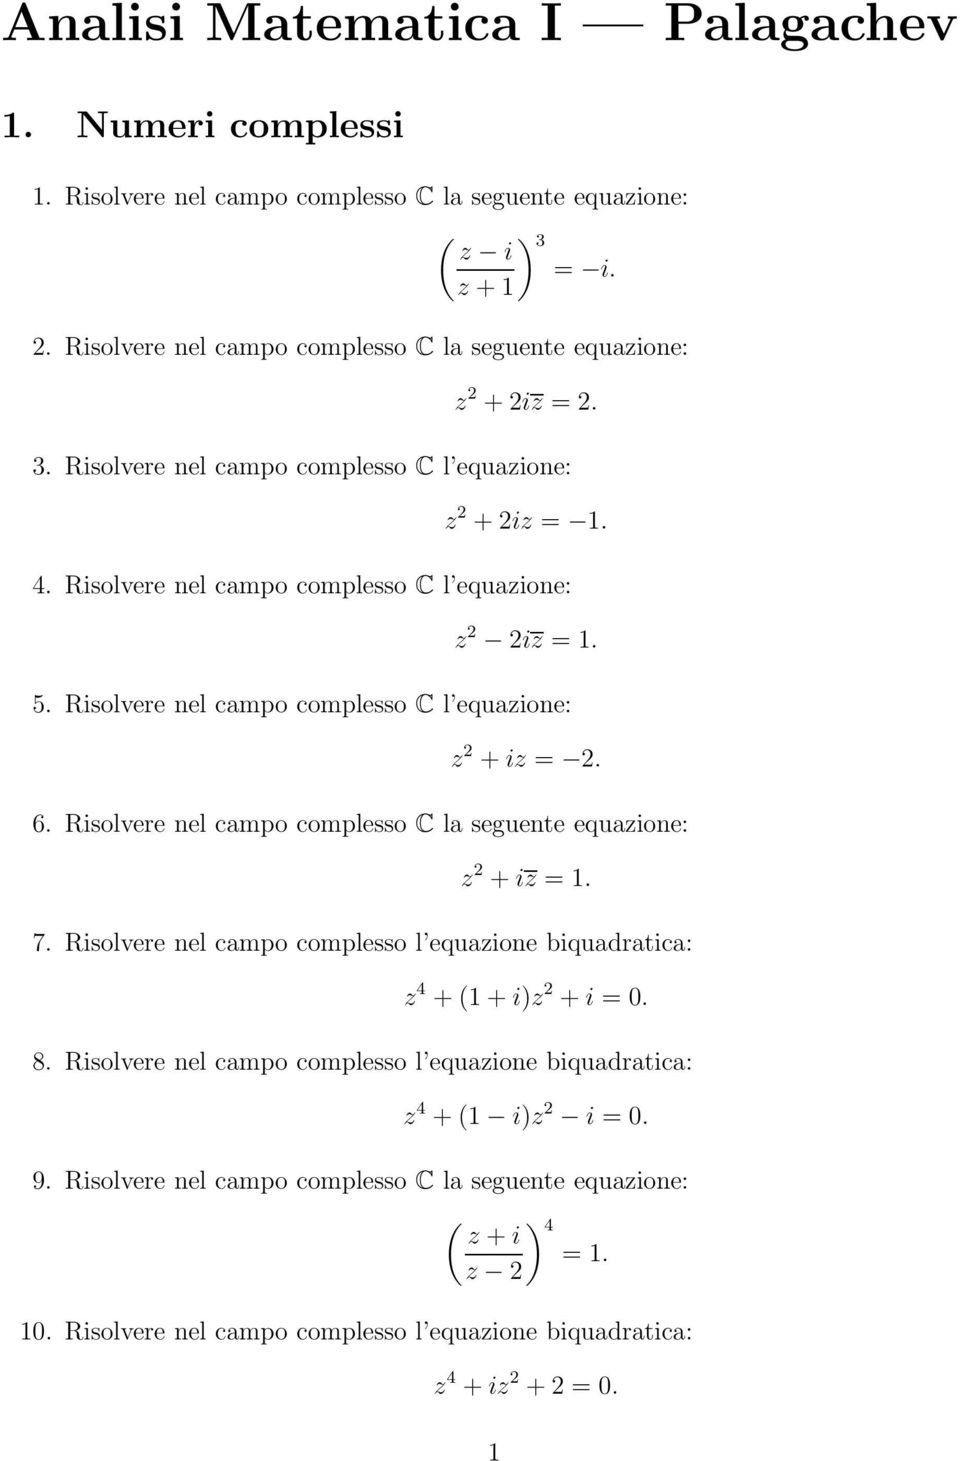 2 6 Risolvere nel campo complesso C la seguente equazione: z 2 + iz = 7 Risolvere nel campo complesso l equazione biquadratica: z 4 + + i)z 2 + i = 8 Risolvere nel campo complesso l